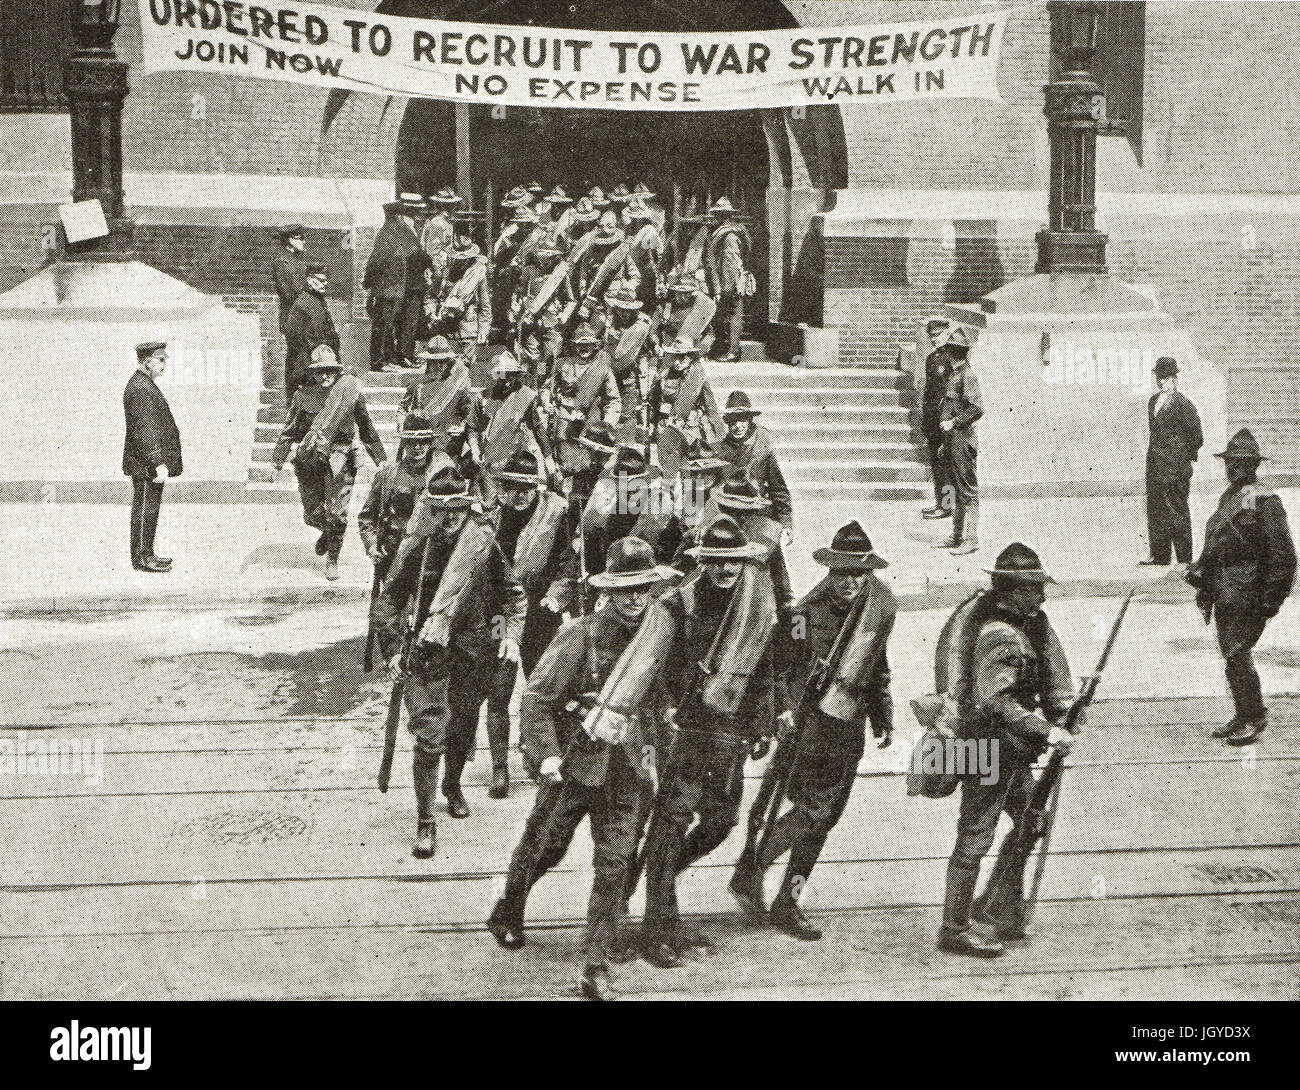 Les recrues de l'Armée américaine au début, le bureau de recrutement de New York, 1917 Banque D'Images